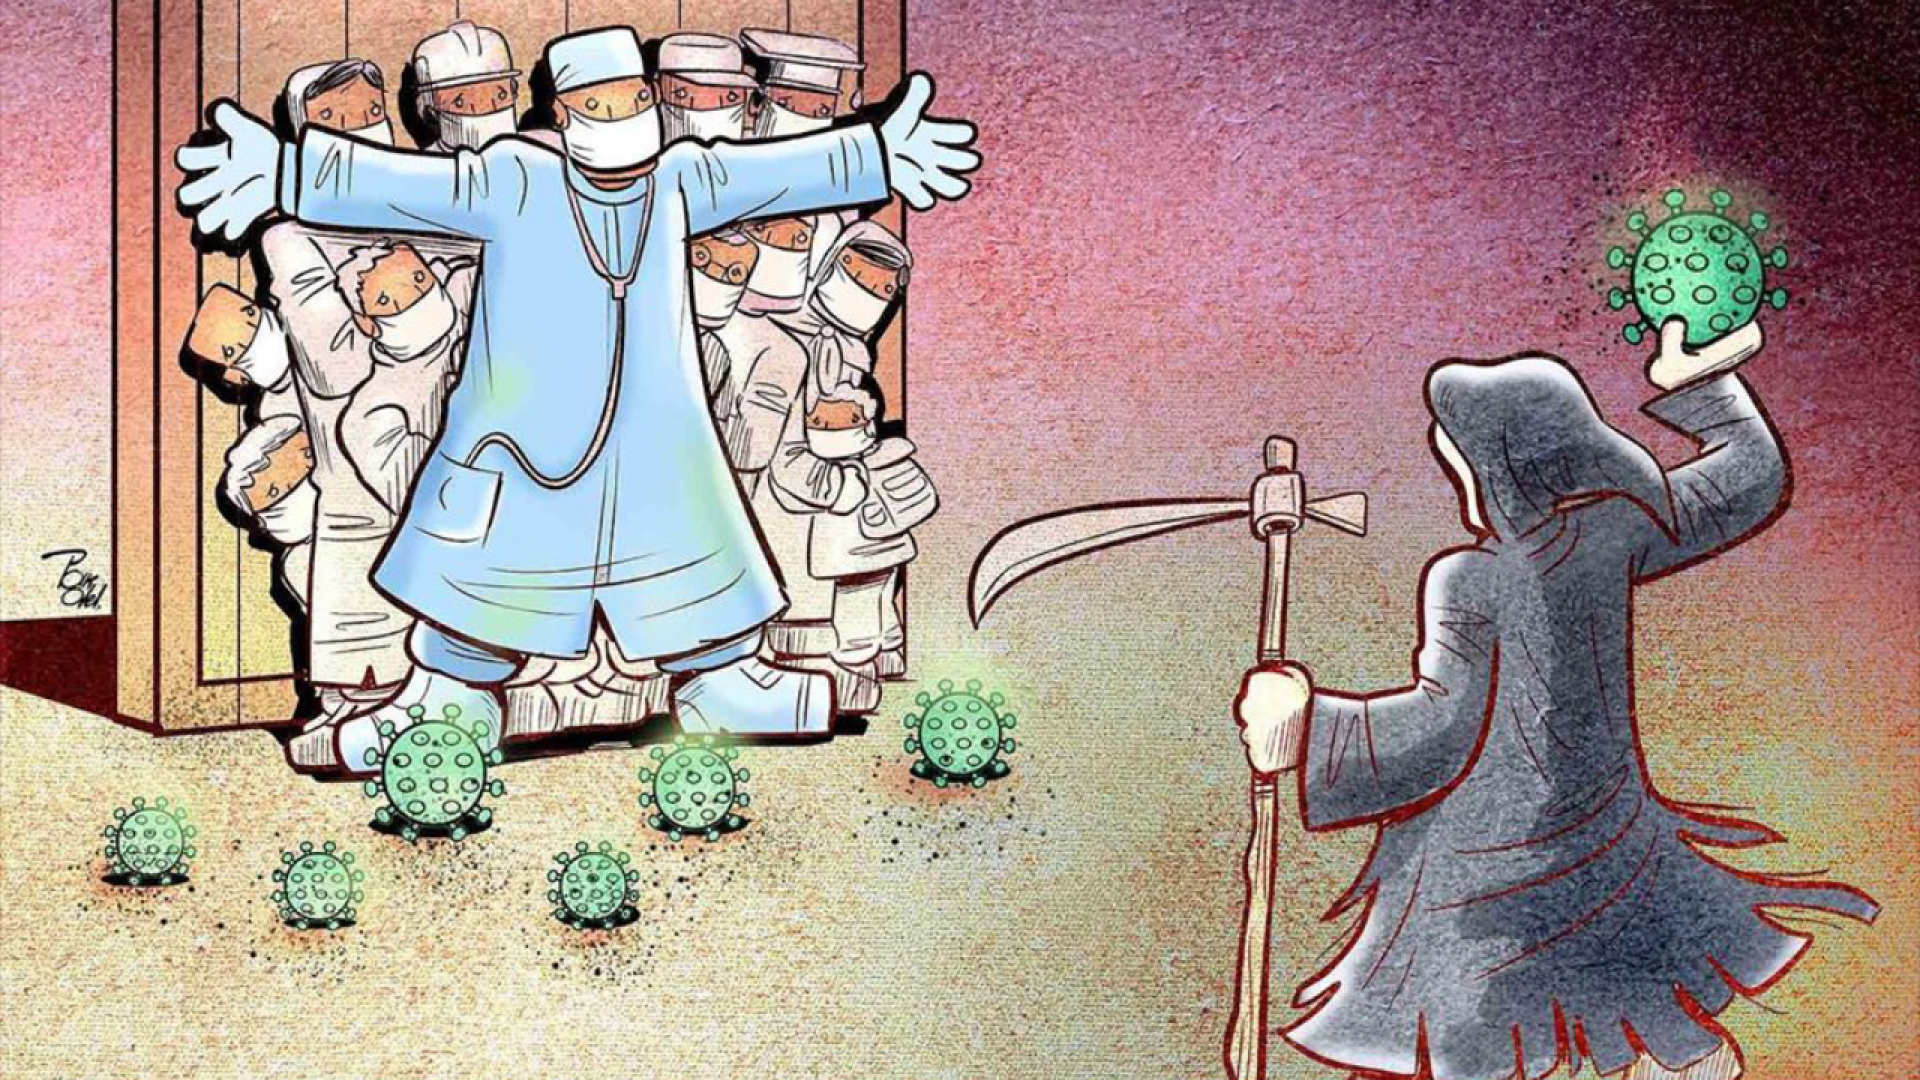 Спасение человеческой жизни. Юмористические иллюстрации. Иранские карикатуры. Карикатуры со смыслом. Арт на тему врачей.